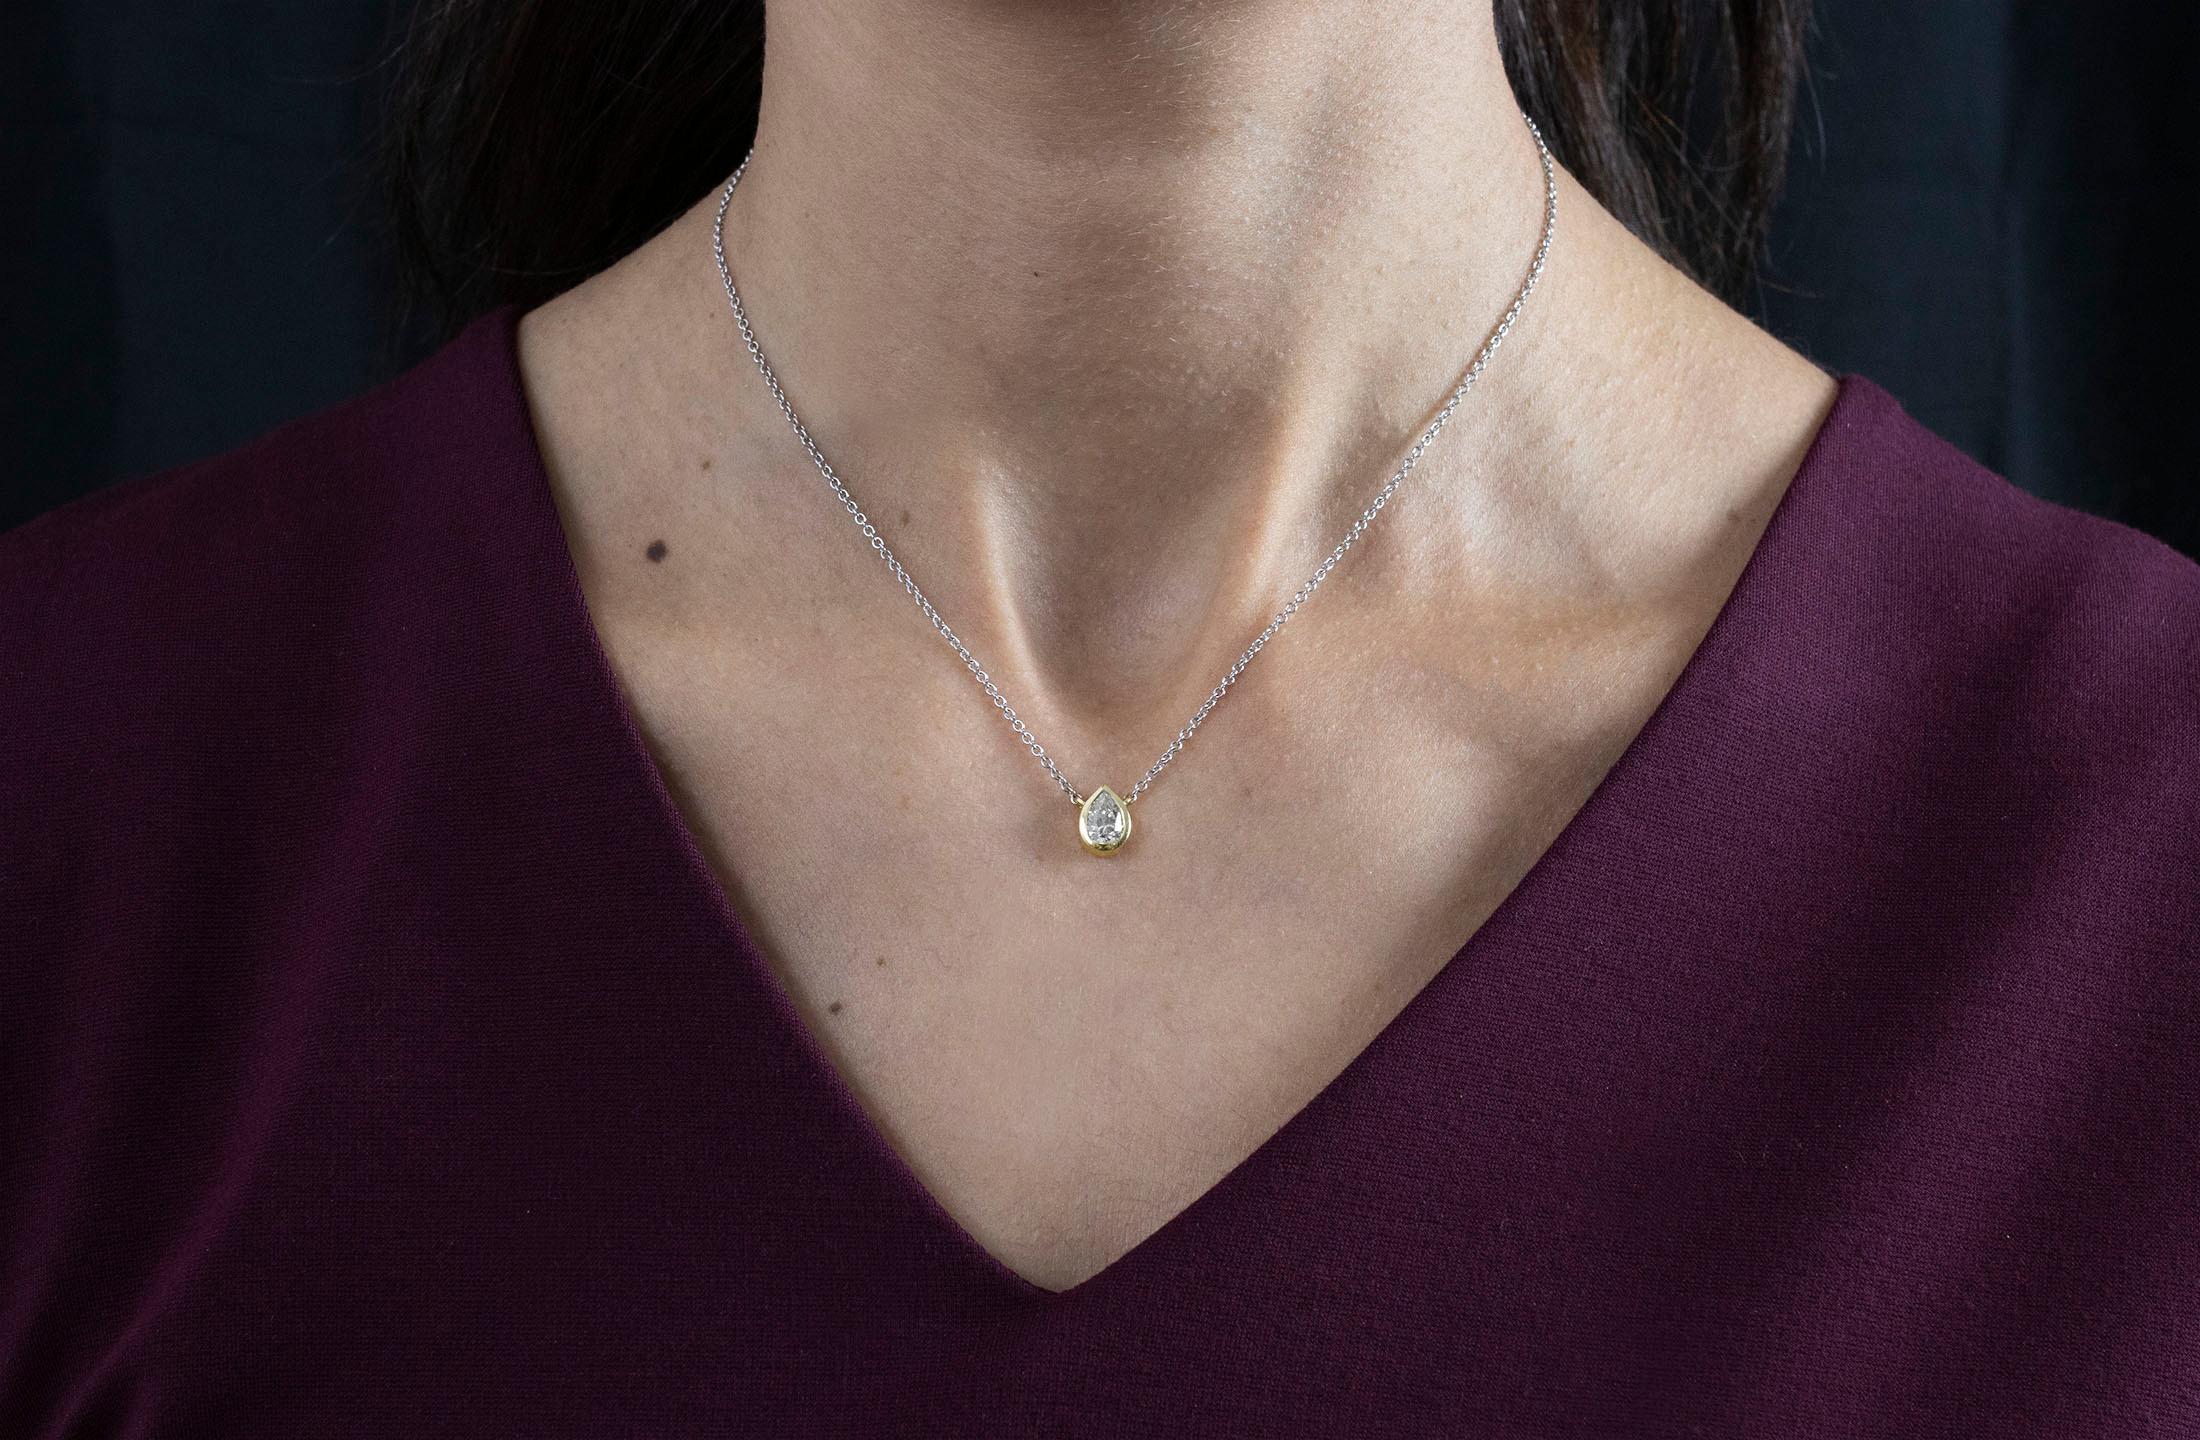 Eine schlichte Anhänger-Halskette mit einem GIA-zertifizierten 0,92-Karat-Diamanten in Birnenform, Farbe L und Reinheit SI2. Lünette in 14K Gelbgold gefasst, aufgehängt an einer 14K Weißgoldkette. 16 Zoll in der Länge. 

Roman Malakov ist ein